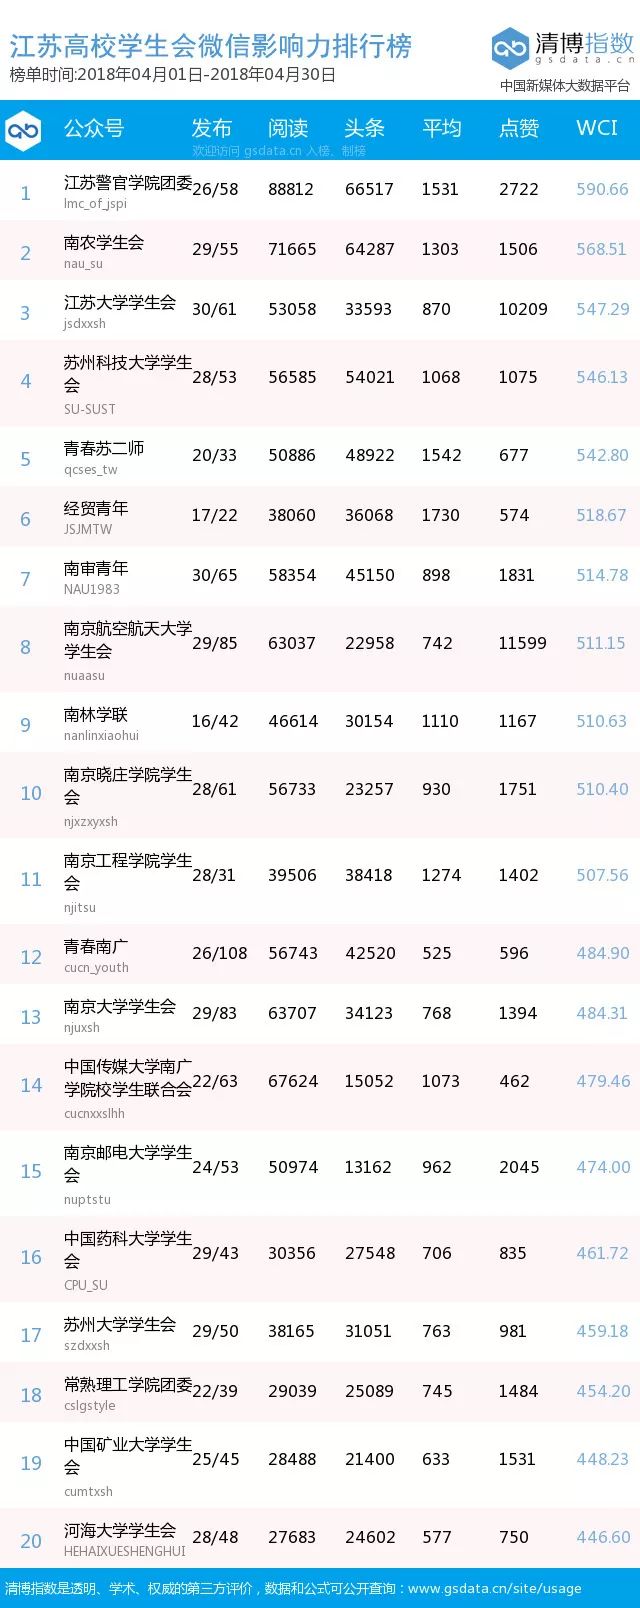 榜单｜江苏高校学生组织微信影响力排行榜月榜